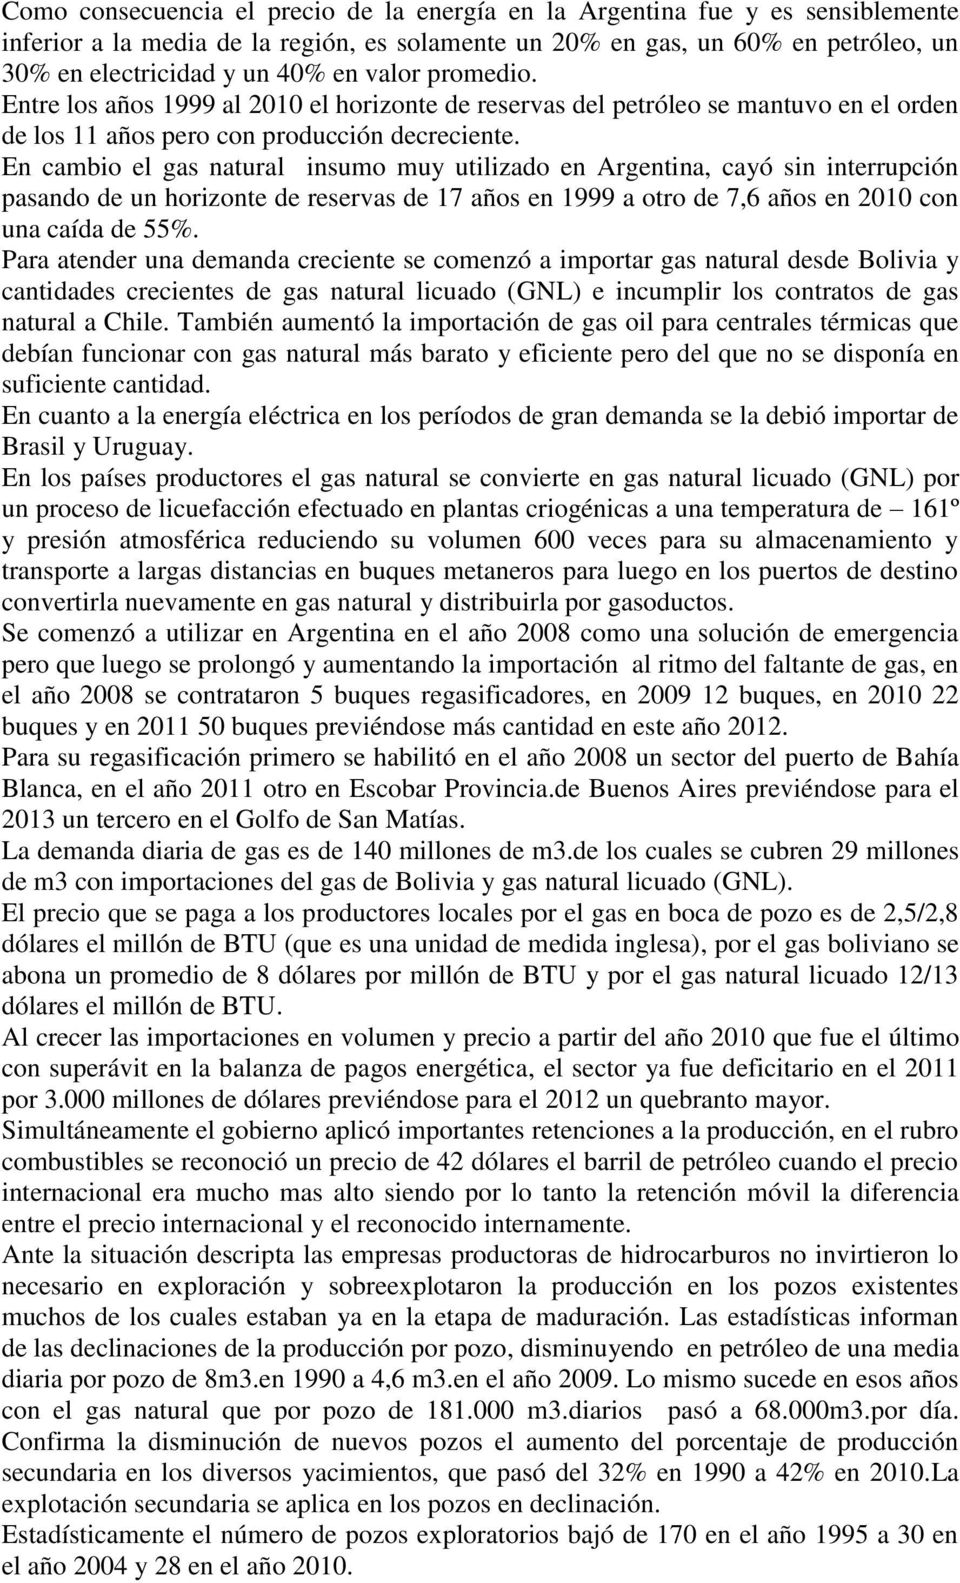 En cambio el gas natural insumo muy utilizado en Argentina, cayó sin interrupción pasando de un horizonte de reservas de 17 años en 1999 a otro de 7,6 años en 2010 con una caída de 55%.